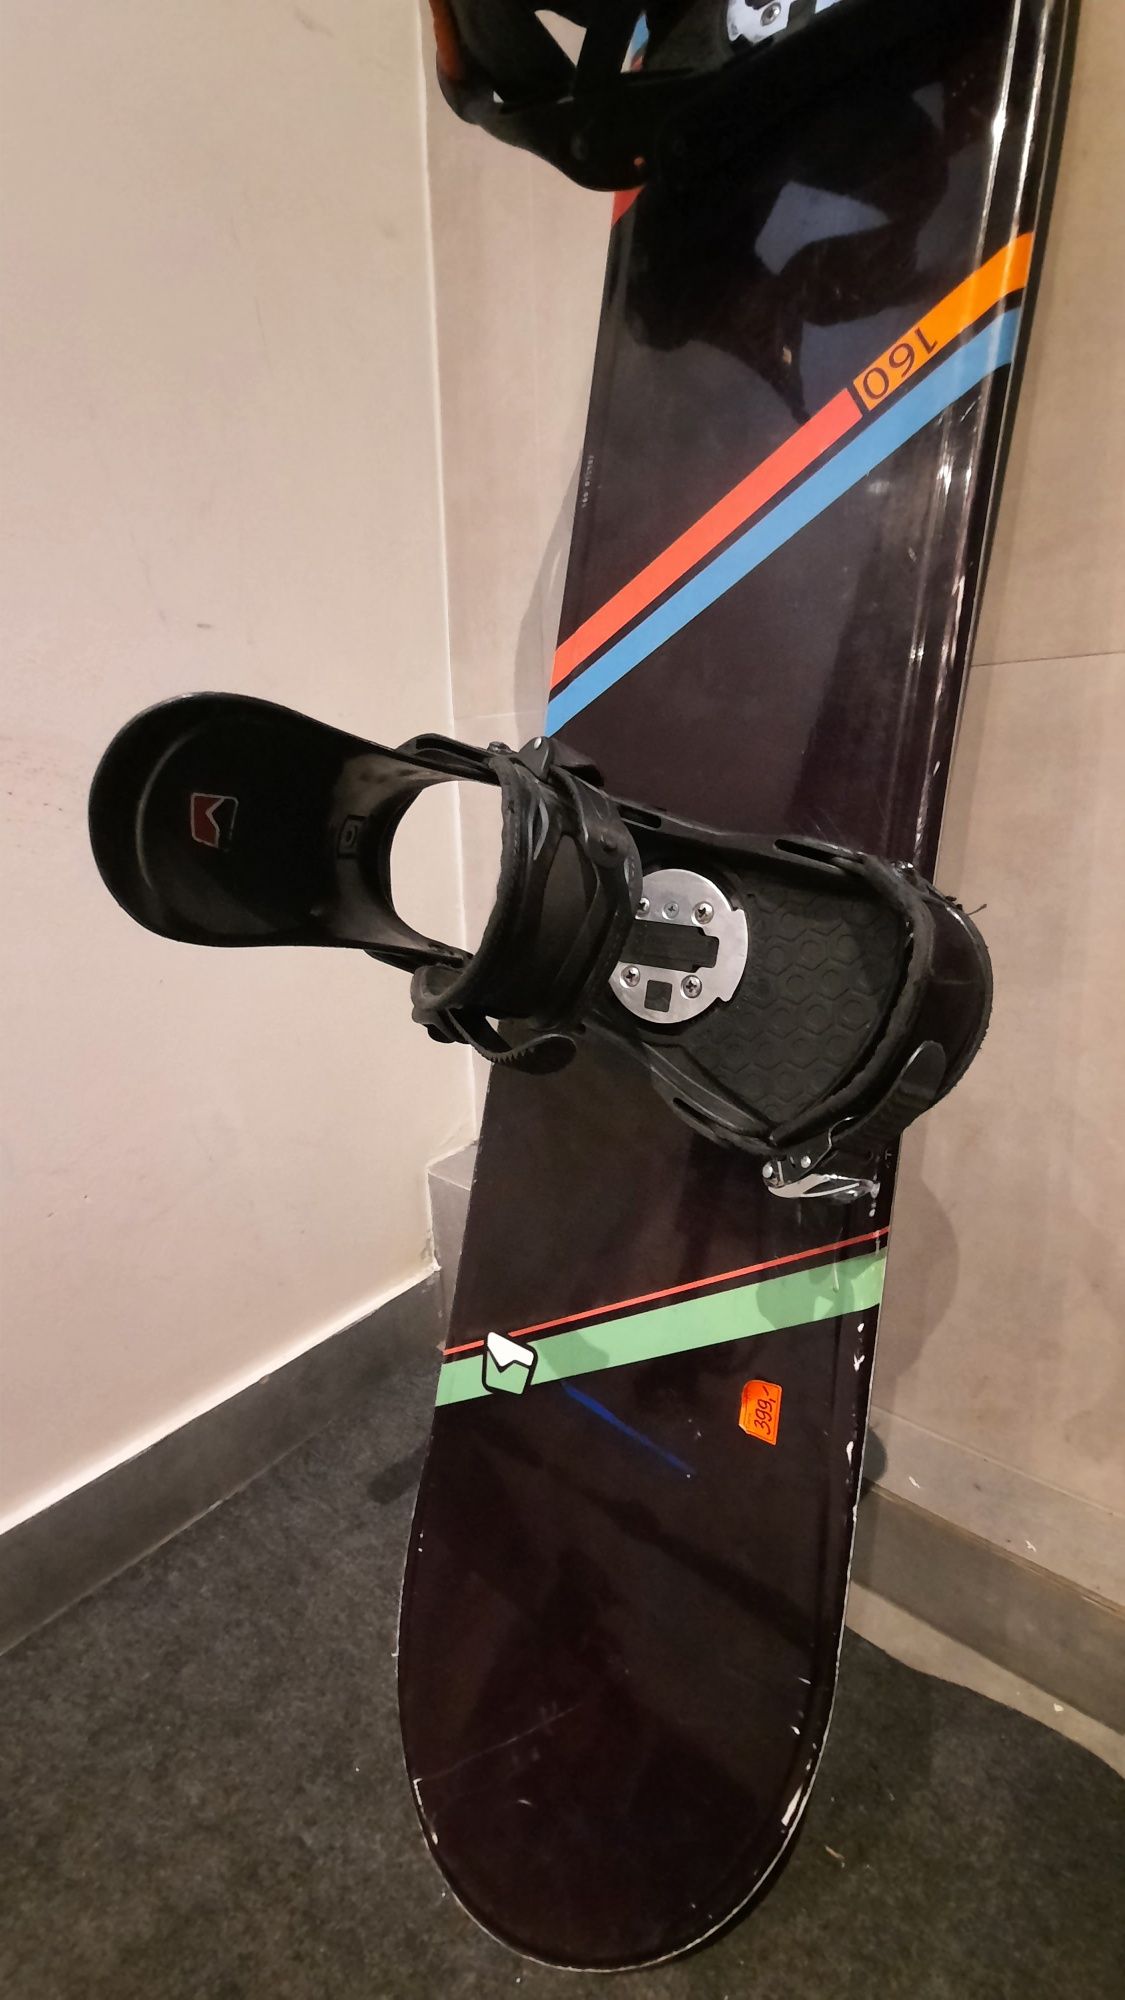 Deska snowboardowa nidecker chill 160 cm z wiązaniami wysyłka